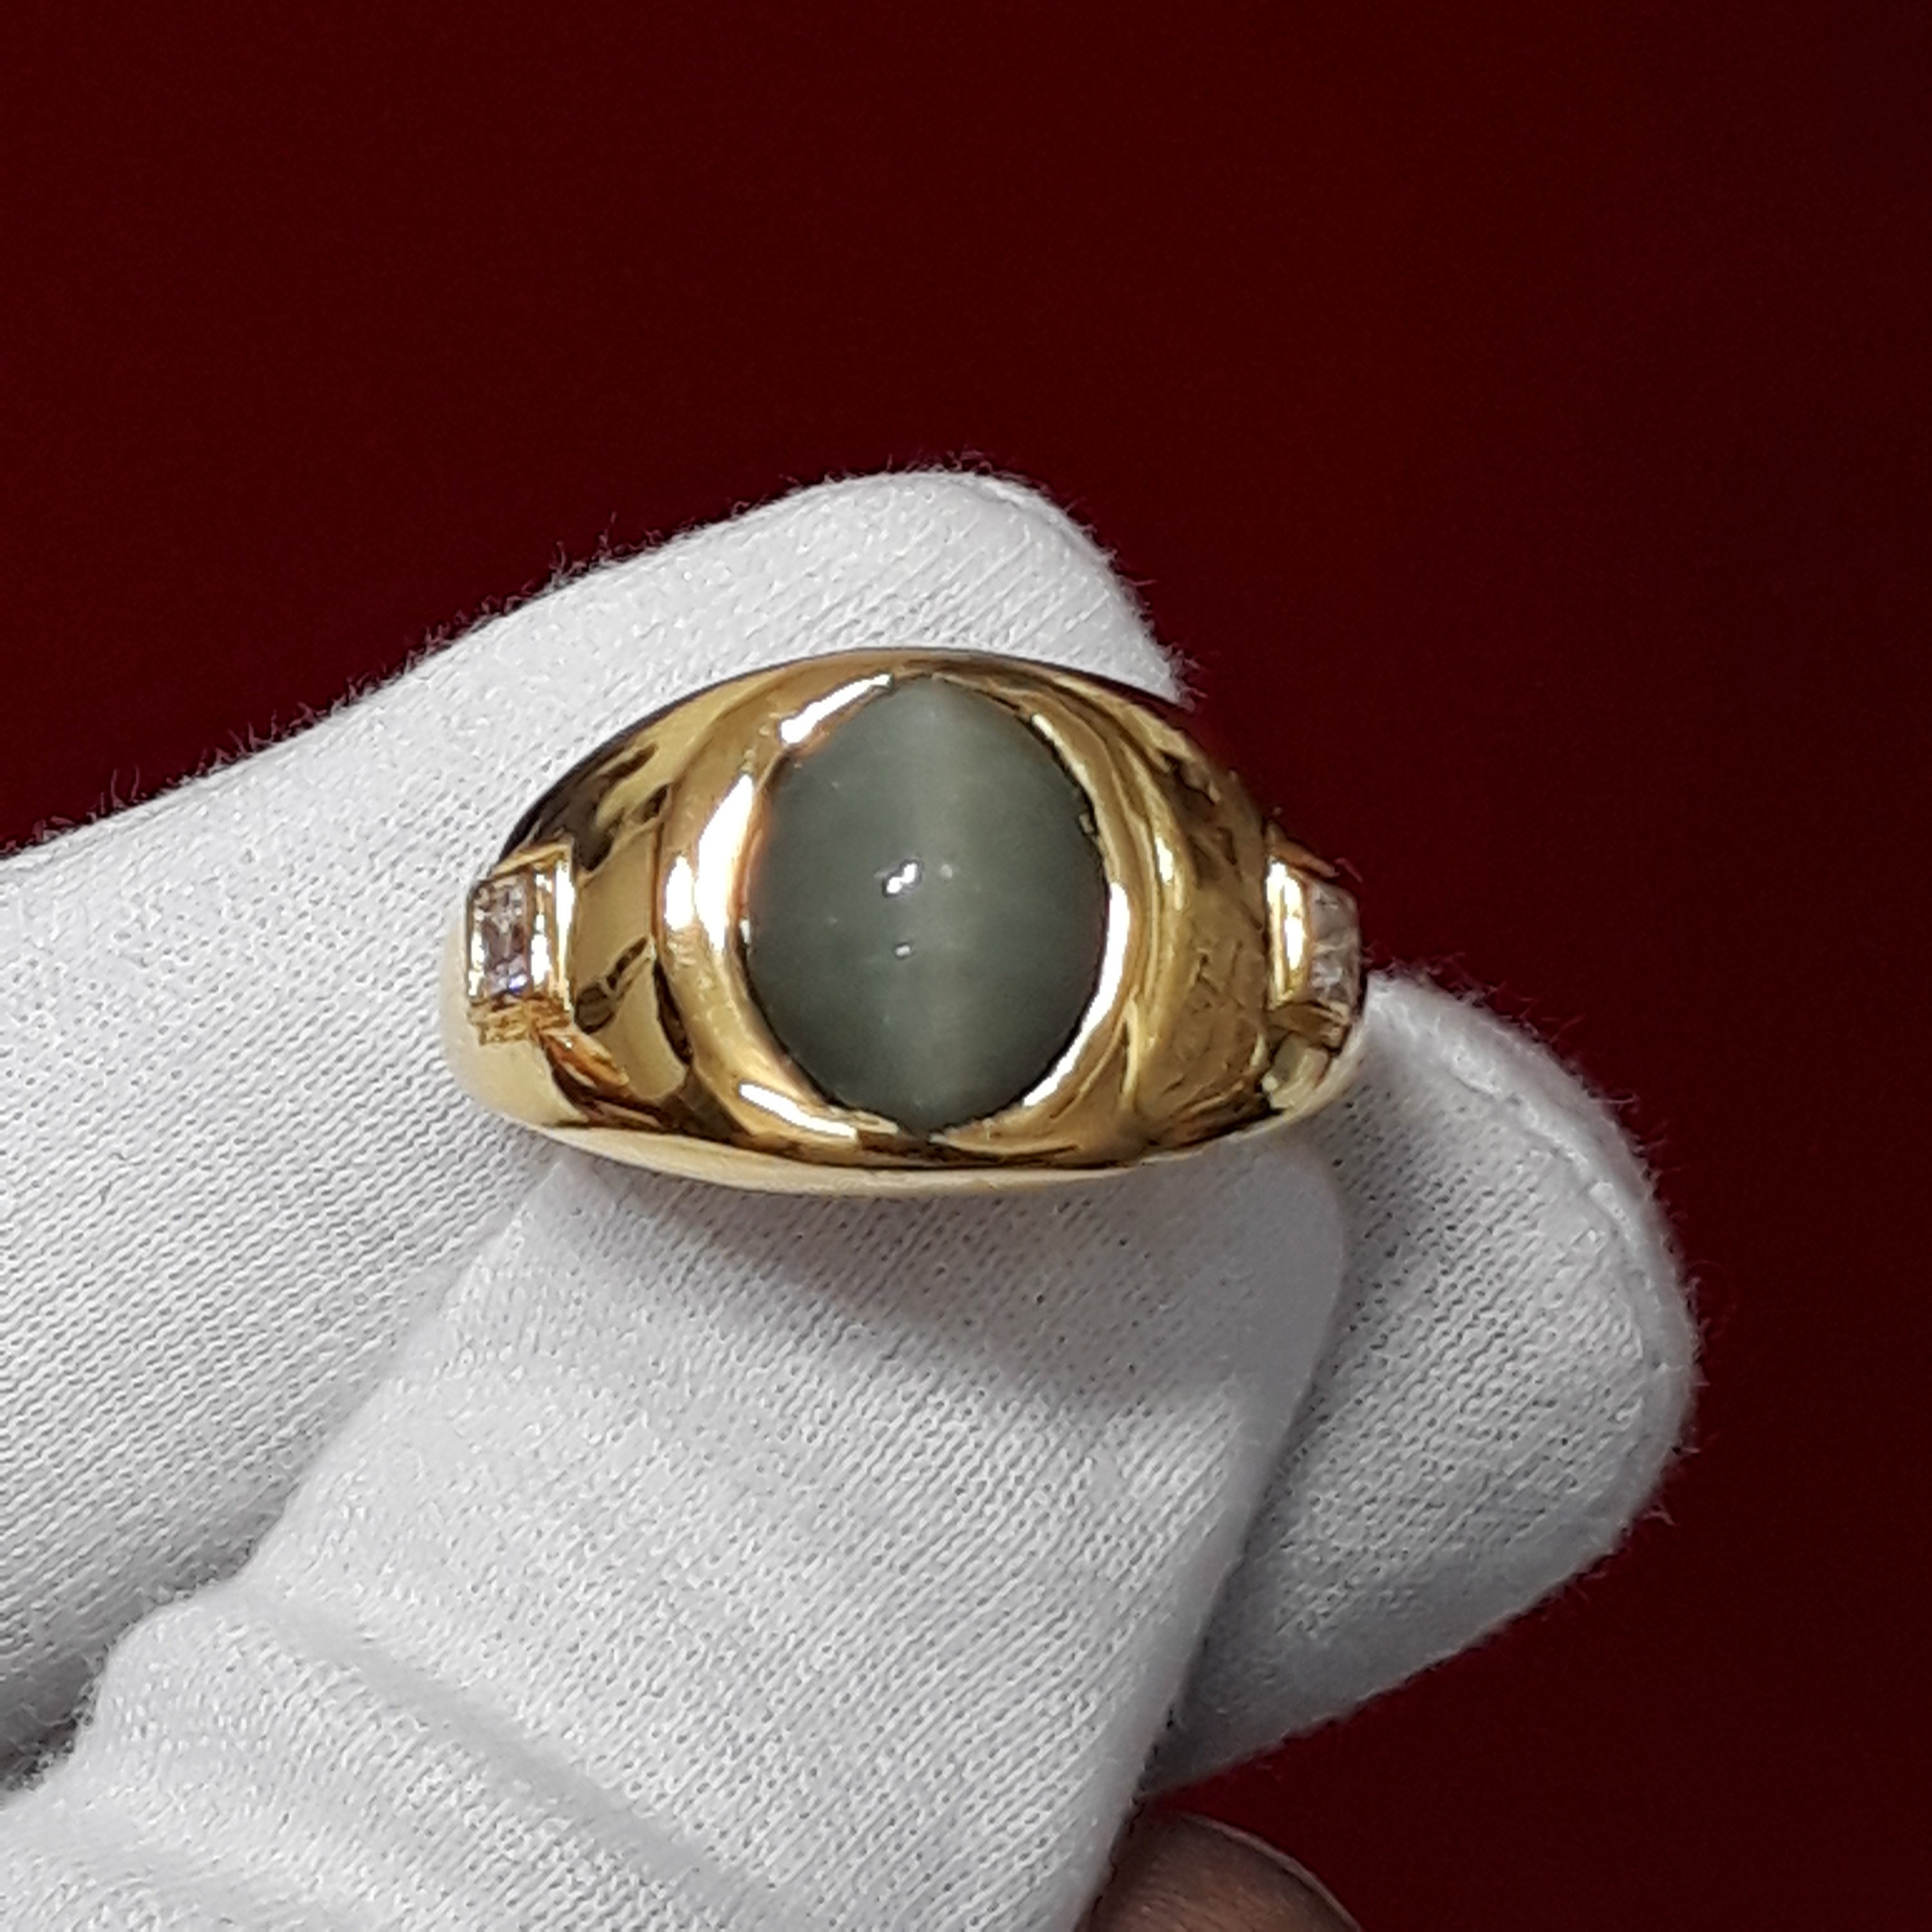 55Carat Natural 4 Carat Cat's Eye Gemstone Silver Ring for Men Women US  Size 4,5,6,7,8,9,10,11,12,13|Amazon.com